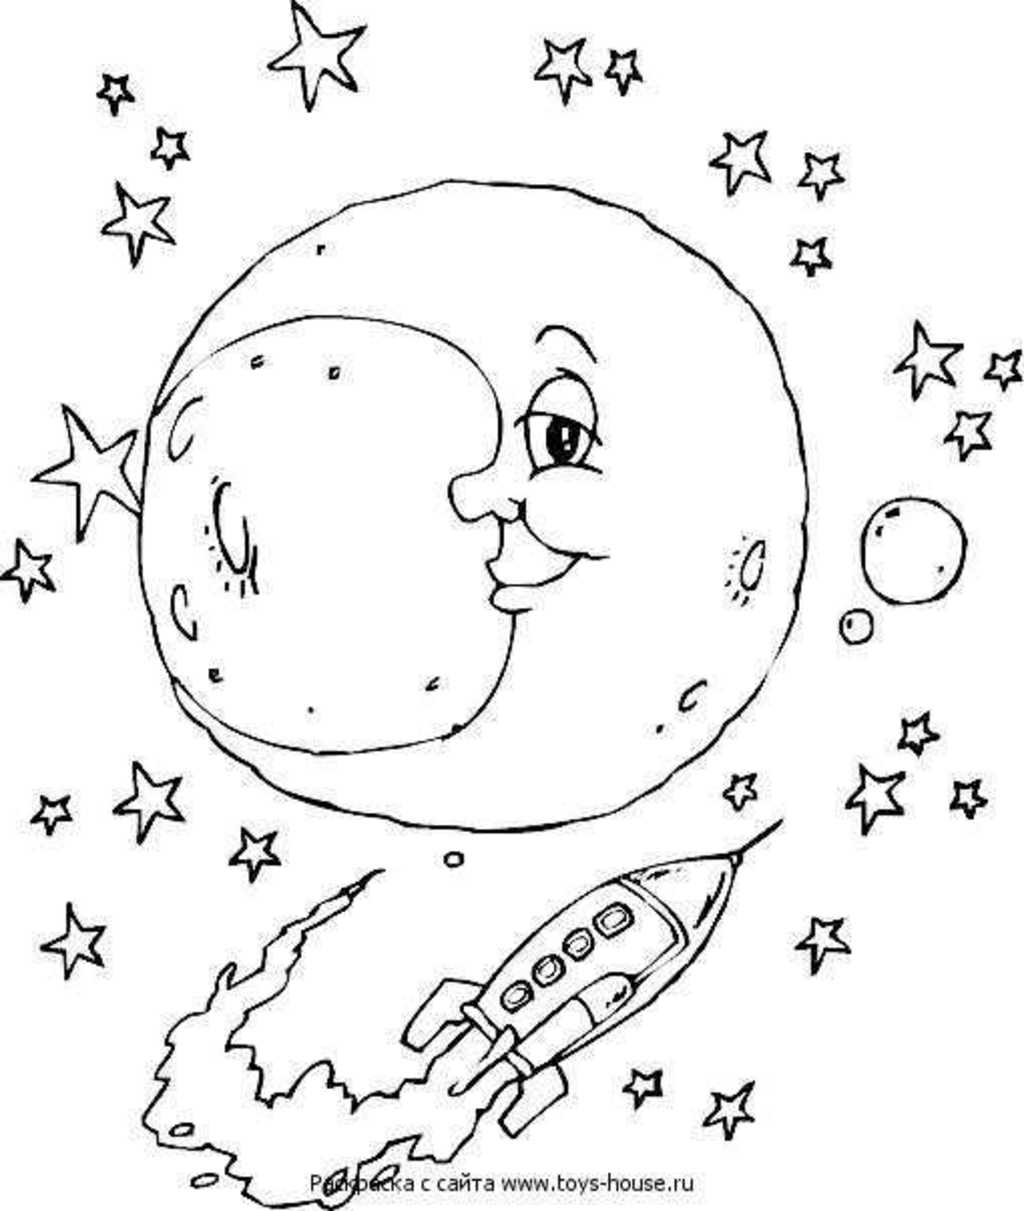 Раскраски на тему космос. Раскраски для взрослых.            Раскраски на тему планеты, ракеты, космос. Раскраски со звездами, кометами, космонавтами. 